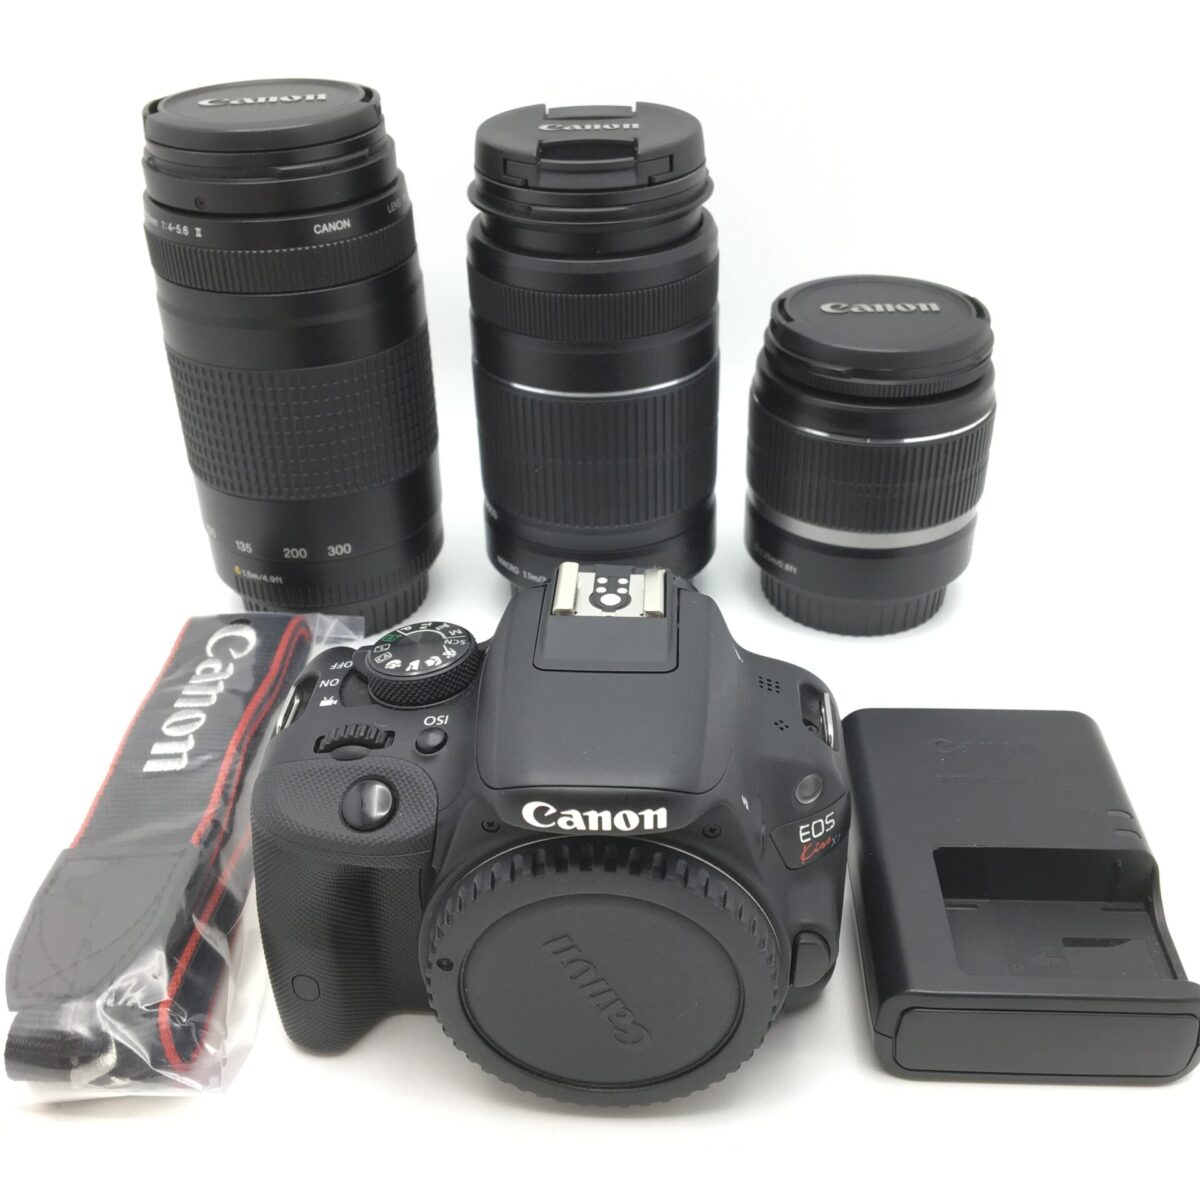 キャノン EOS Kiss X7 カメラ+レンズ3本】の買取金額と査定のポイント